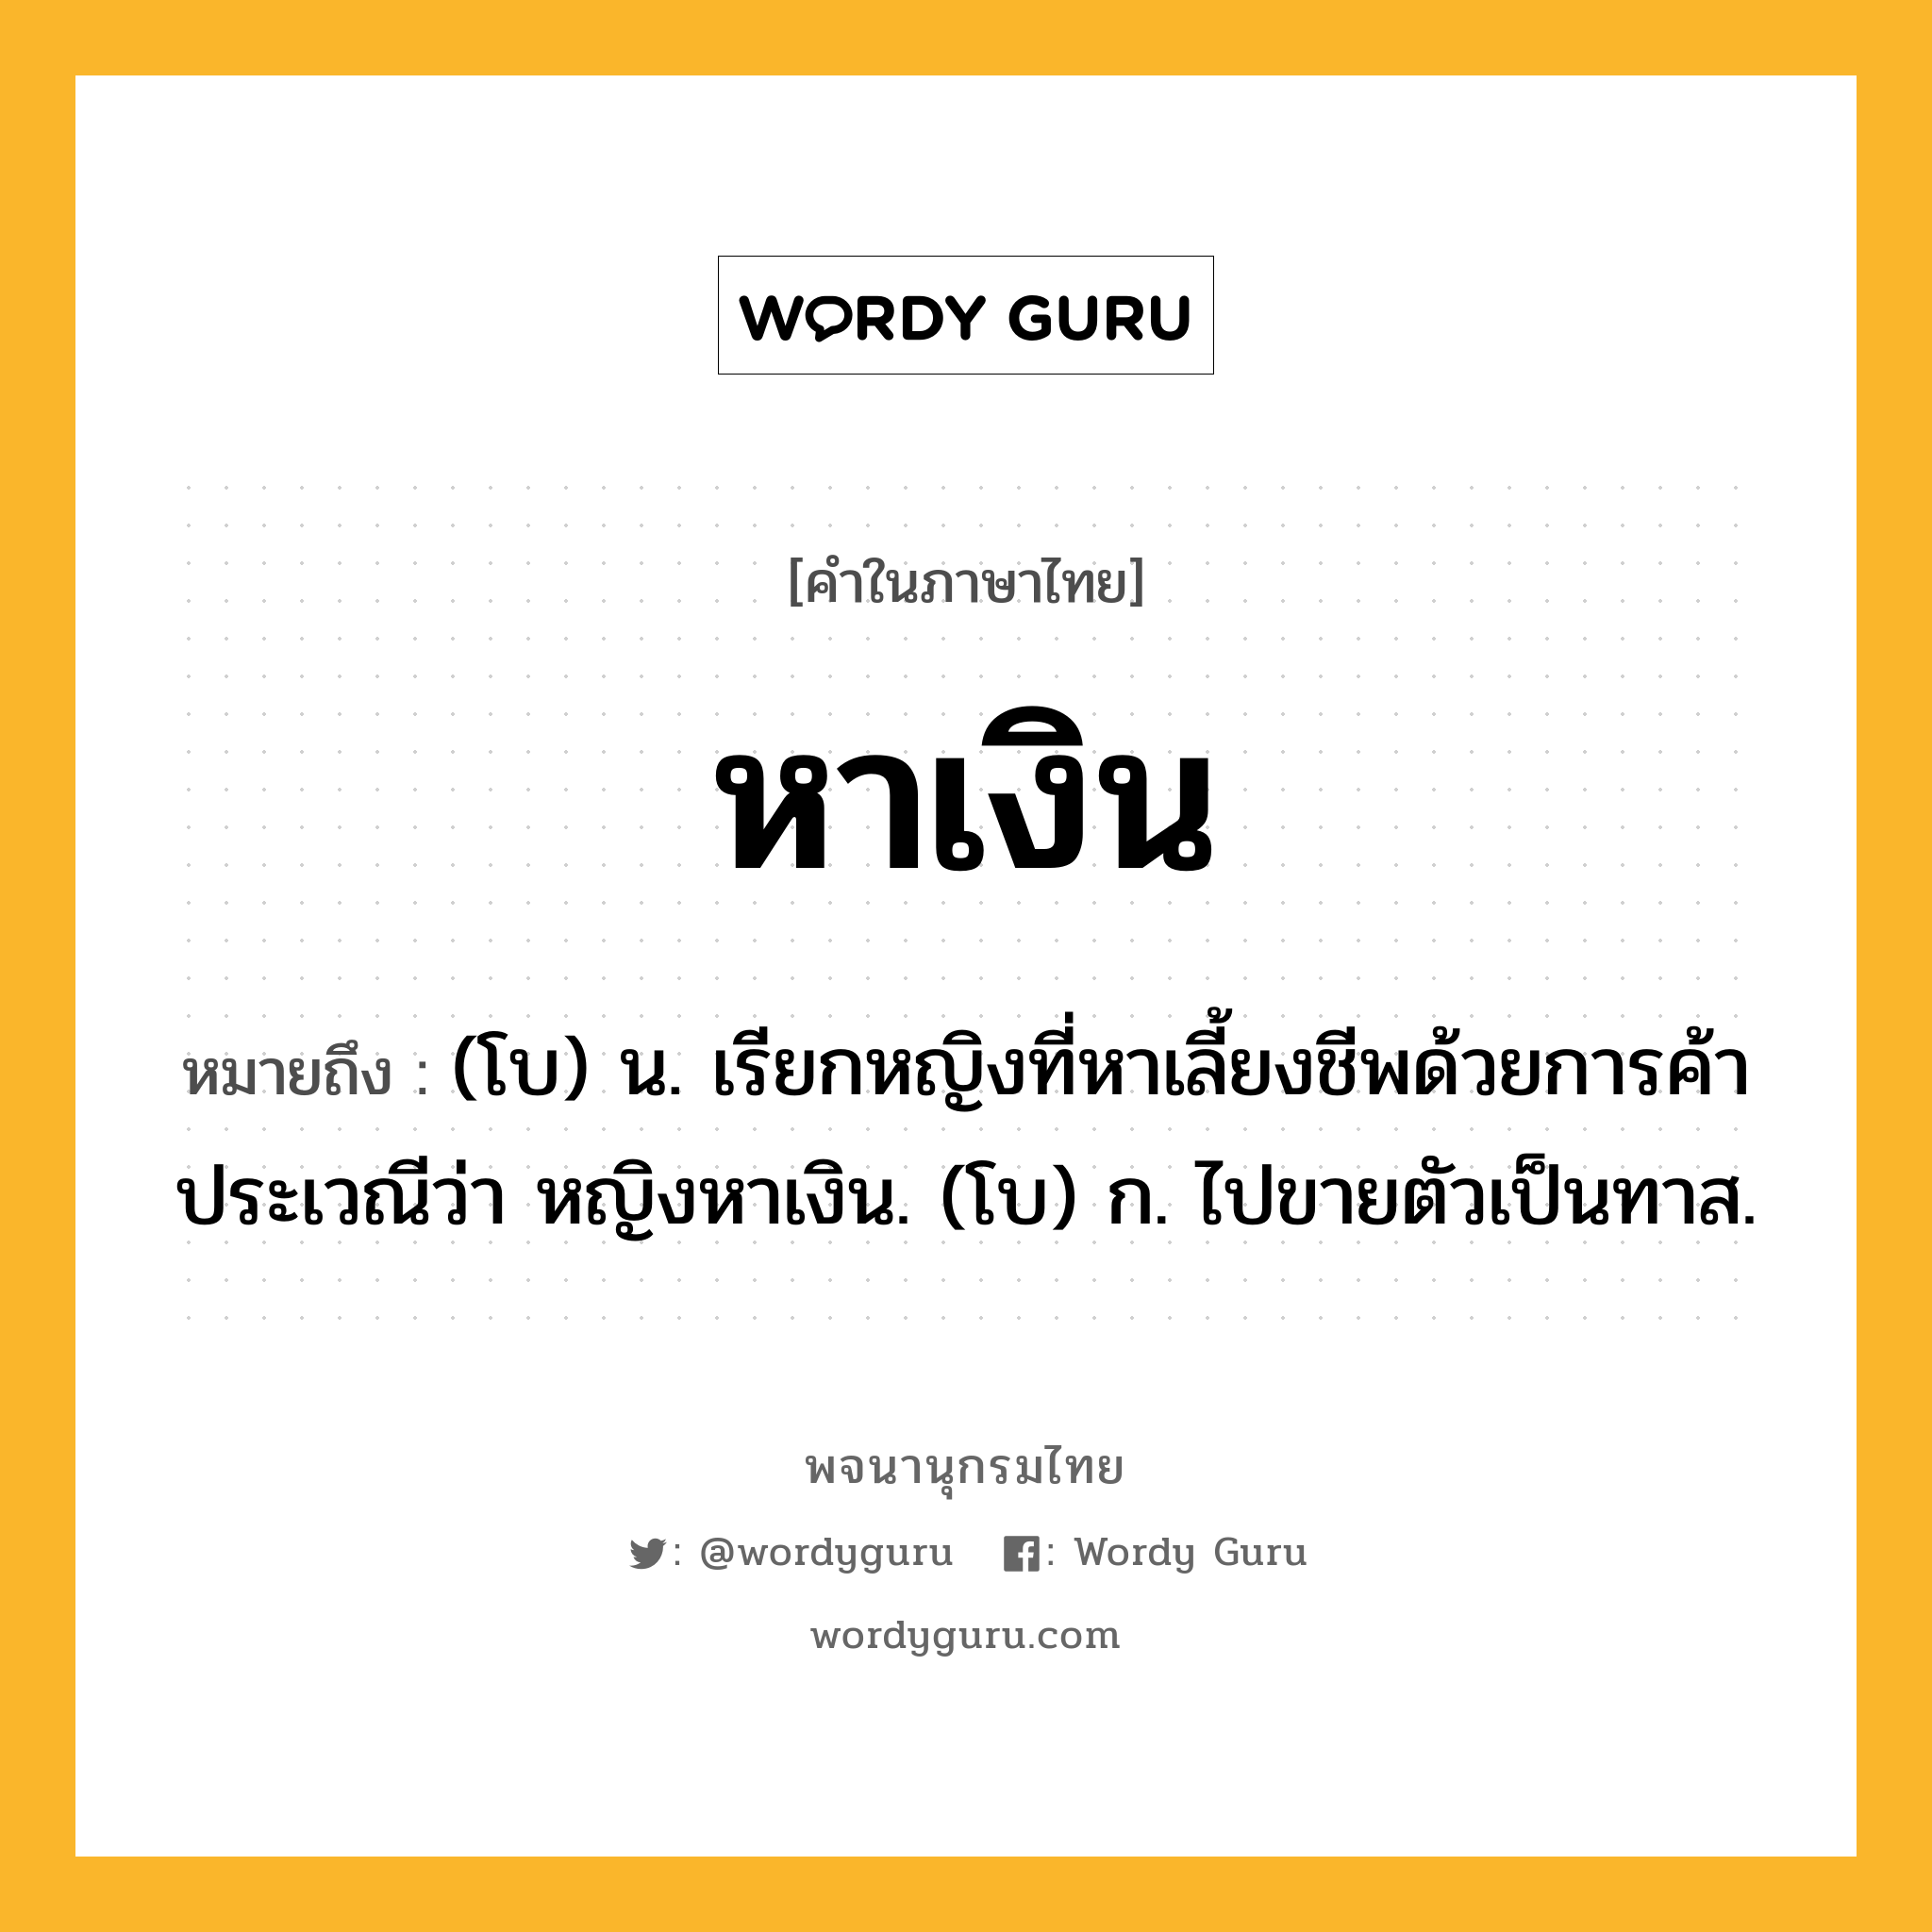 หาเงิน หมายถึงอะไร?, คำในภาษาไทย หาเงิน หมายถึง (โบ) น. เรียกหญิงที่หาเลี้ยงชีพด้วยการค้าประเวณีว่า หญิงหาเงิน. (โบ) ก. ไปขายตัวเป็นทาส.